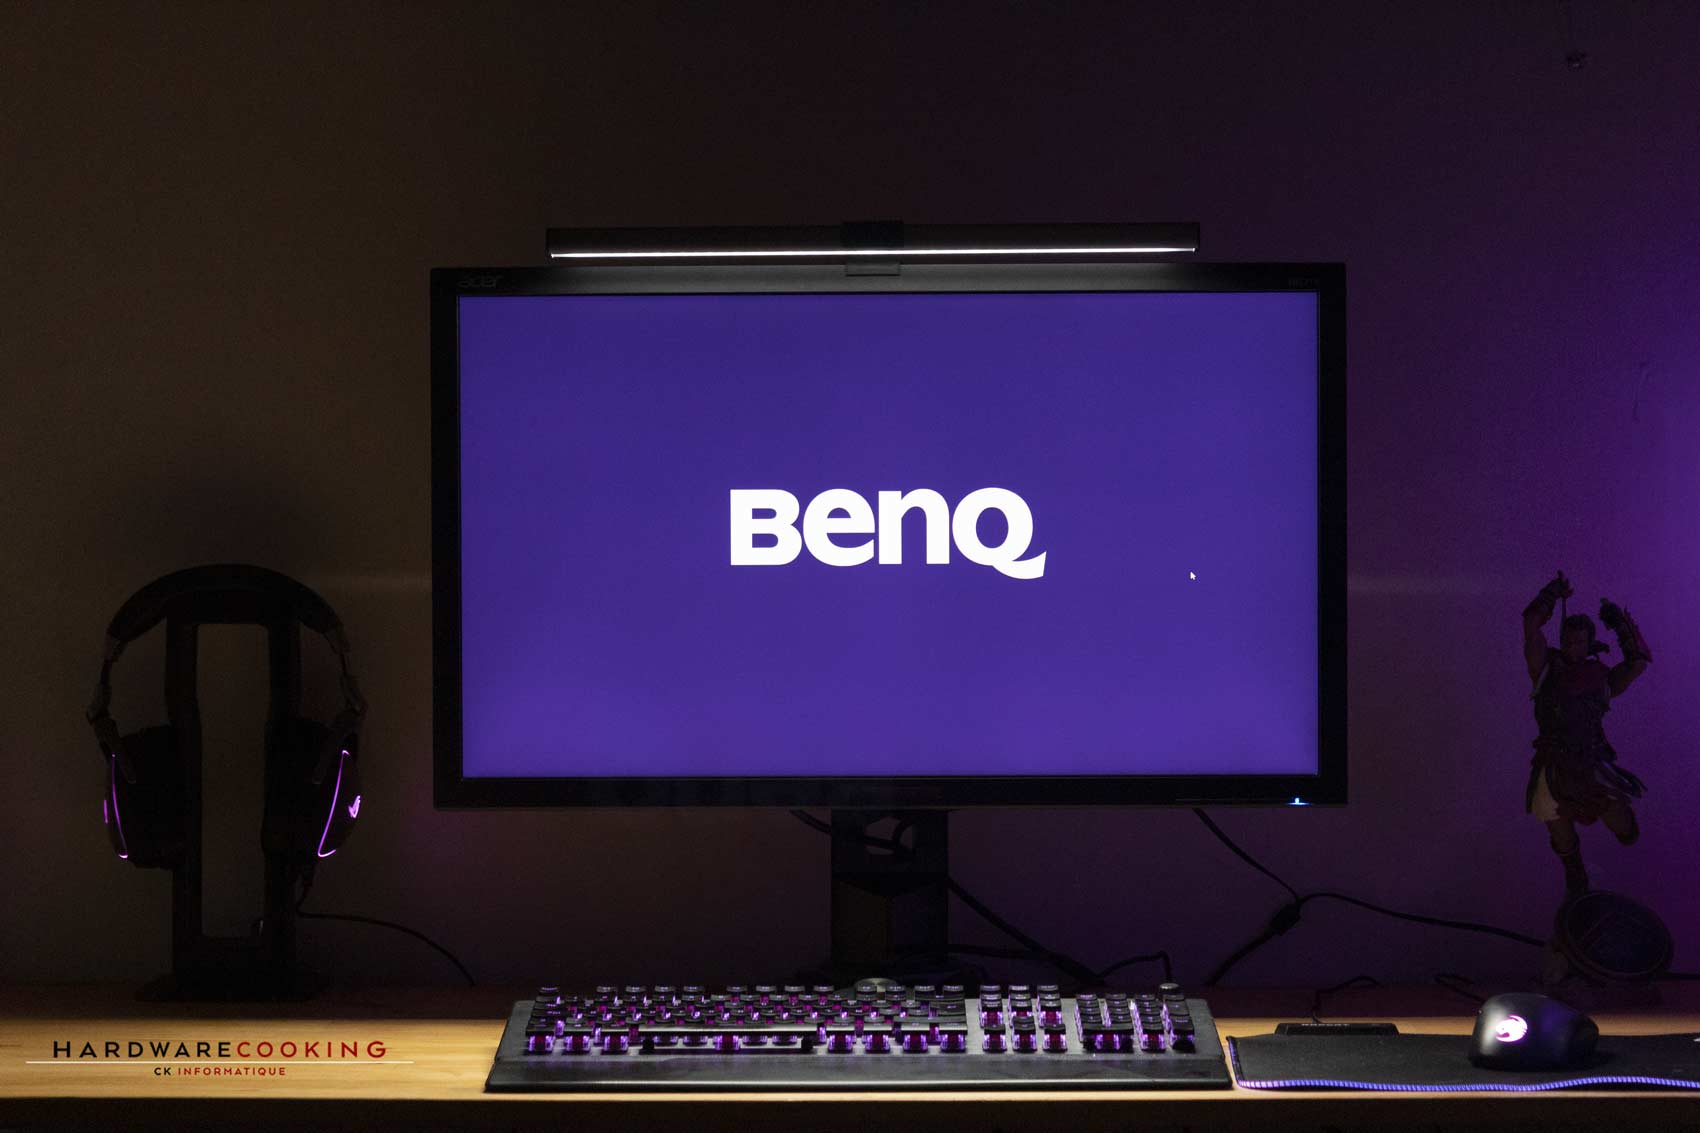 lampe de bureau LED pour écran PC BenQ ScreenBar Plus (Vendeur Tiers) –